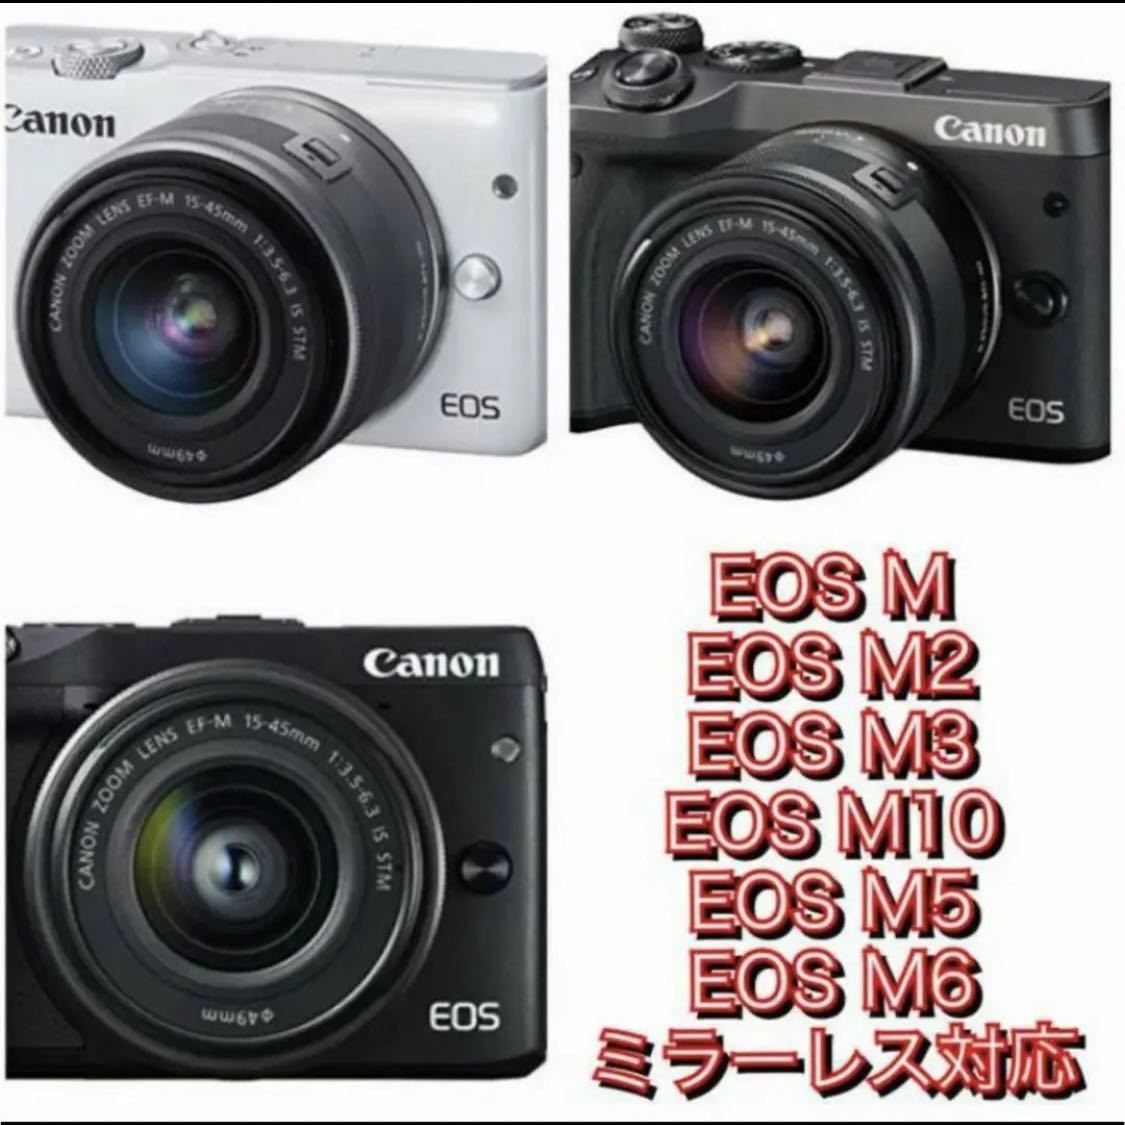 Canonミラーレス用 超望遠レンズ EOSMシリーズ対応 ホワイト白色